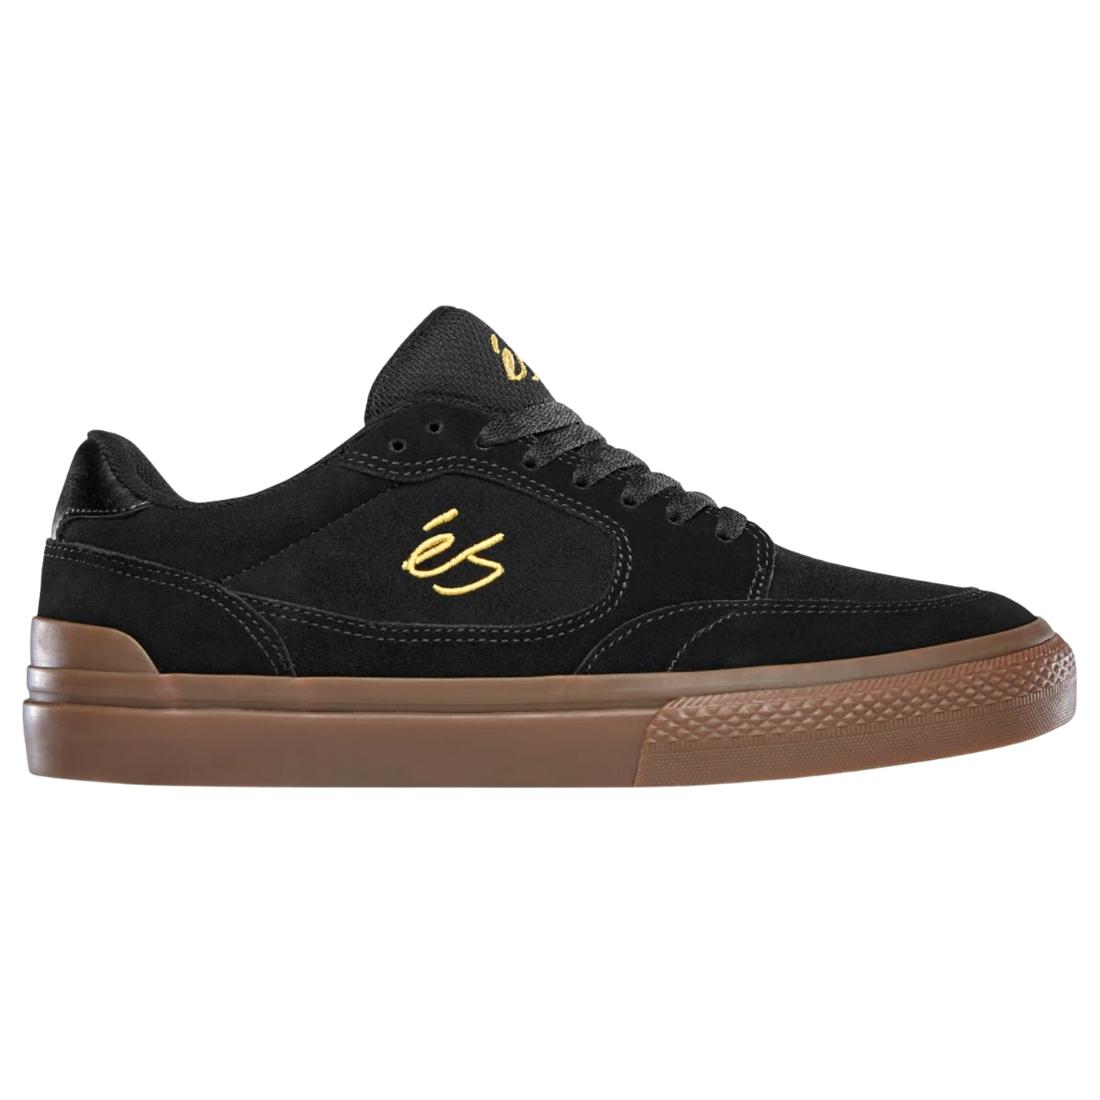 Es Caspian Skate Shoes - Black/Gum - Mens Skate Shoes by eS